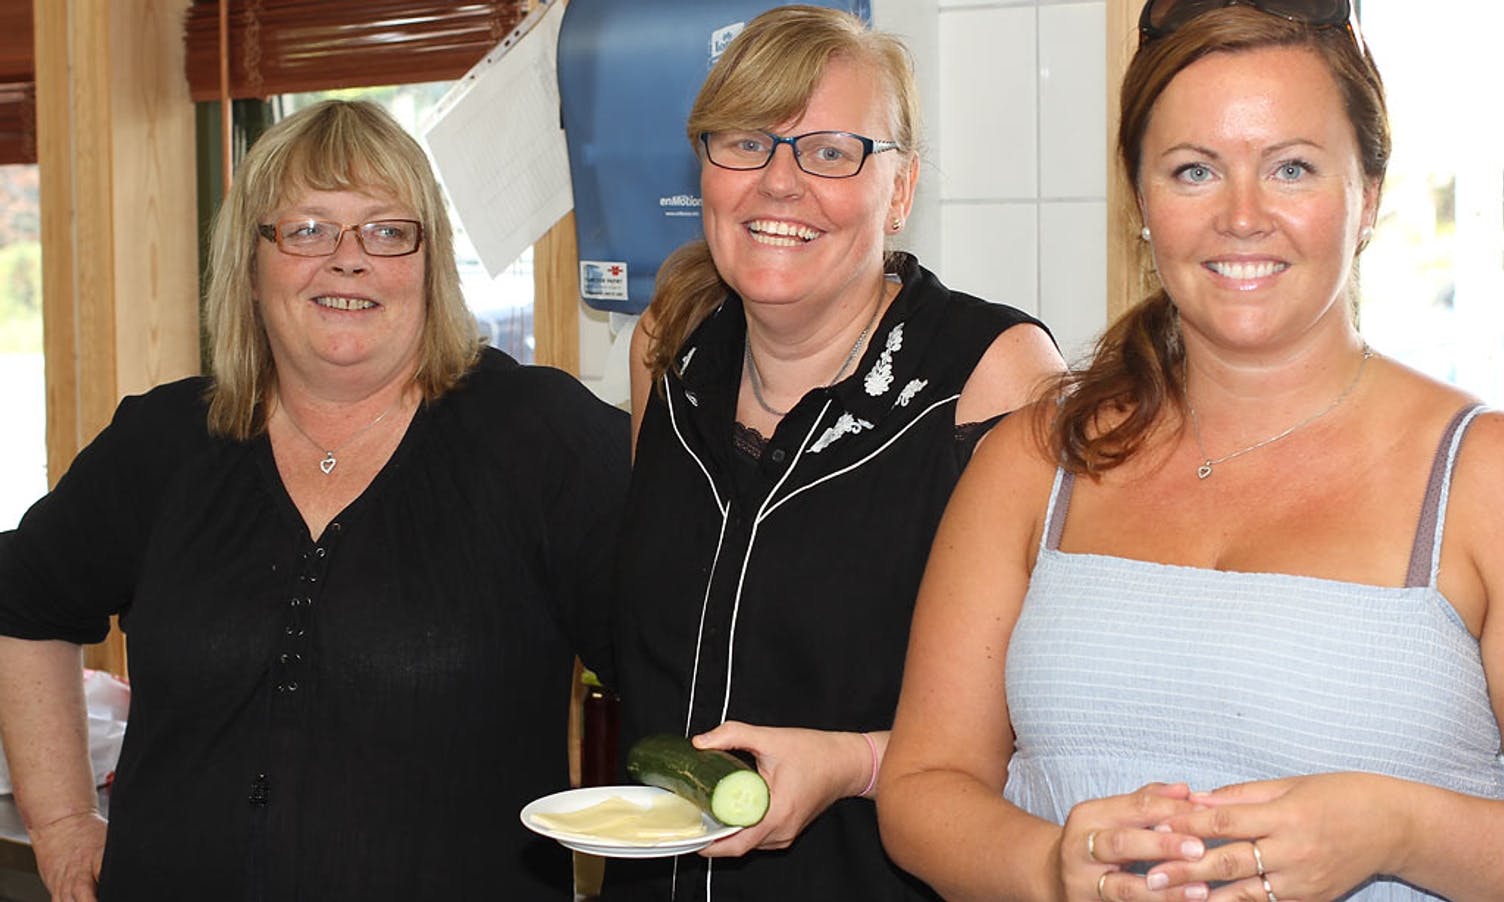 På kjøkkenet, f.v.: Siv Søgnen, Charlotte Sjøbø og Monica Eidsnes. (Foto: KVB)